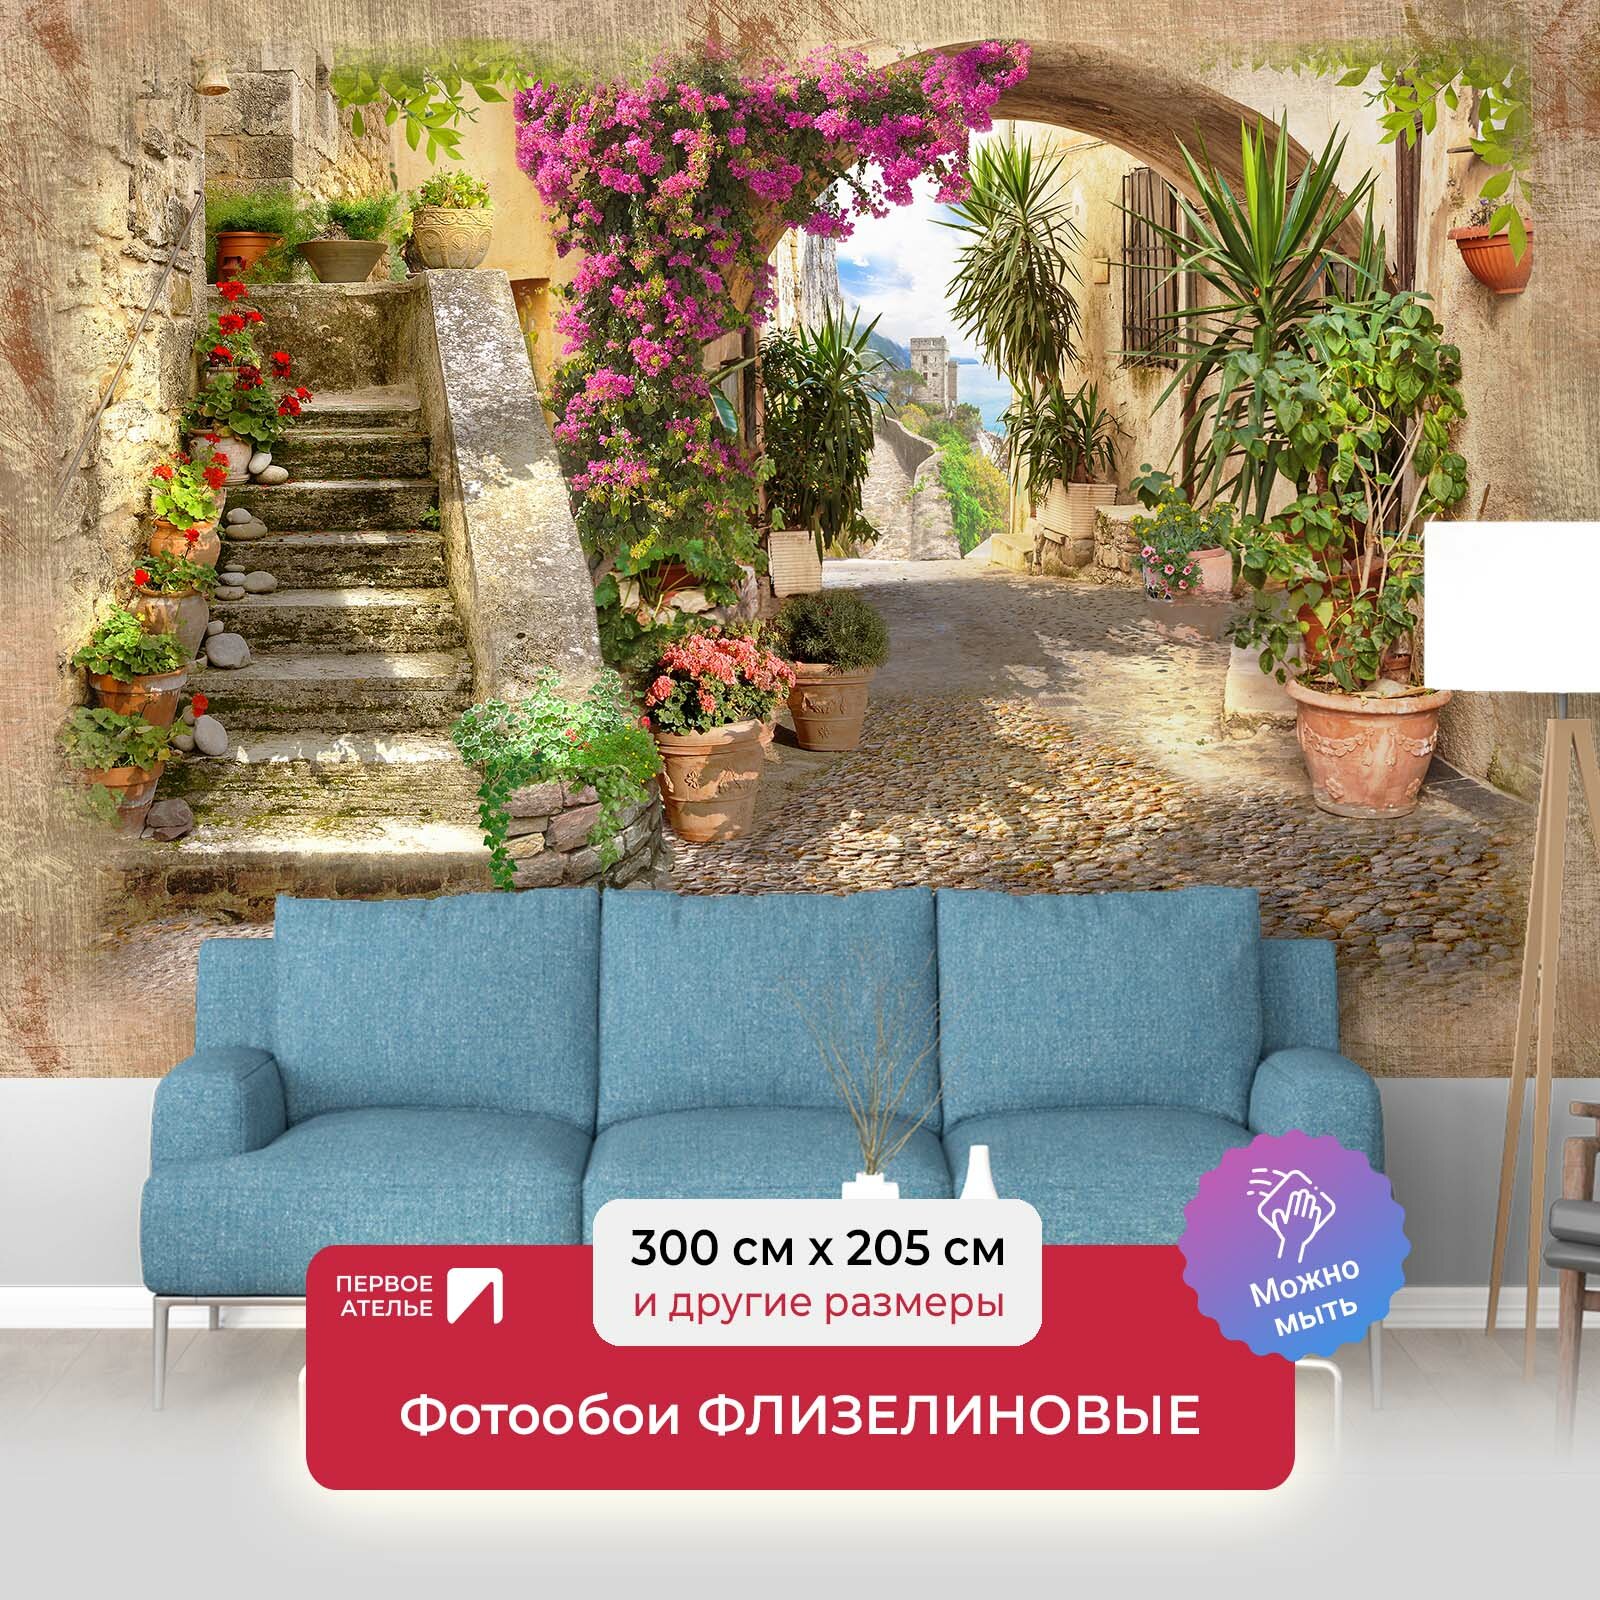 Фотообои на стену первое ателье "Старинная узкая европейская улочка с цветами в горшках и лестницей" 300х205 см (ШхВ), флизелиновые Premium